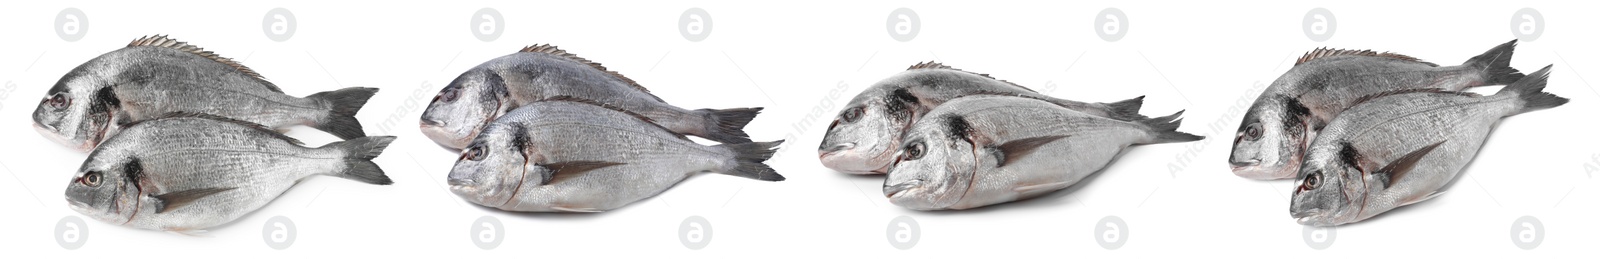 Image of Raw dorada fish isolated on white, set